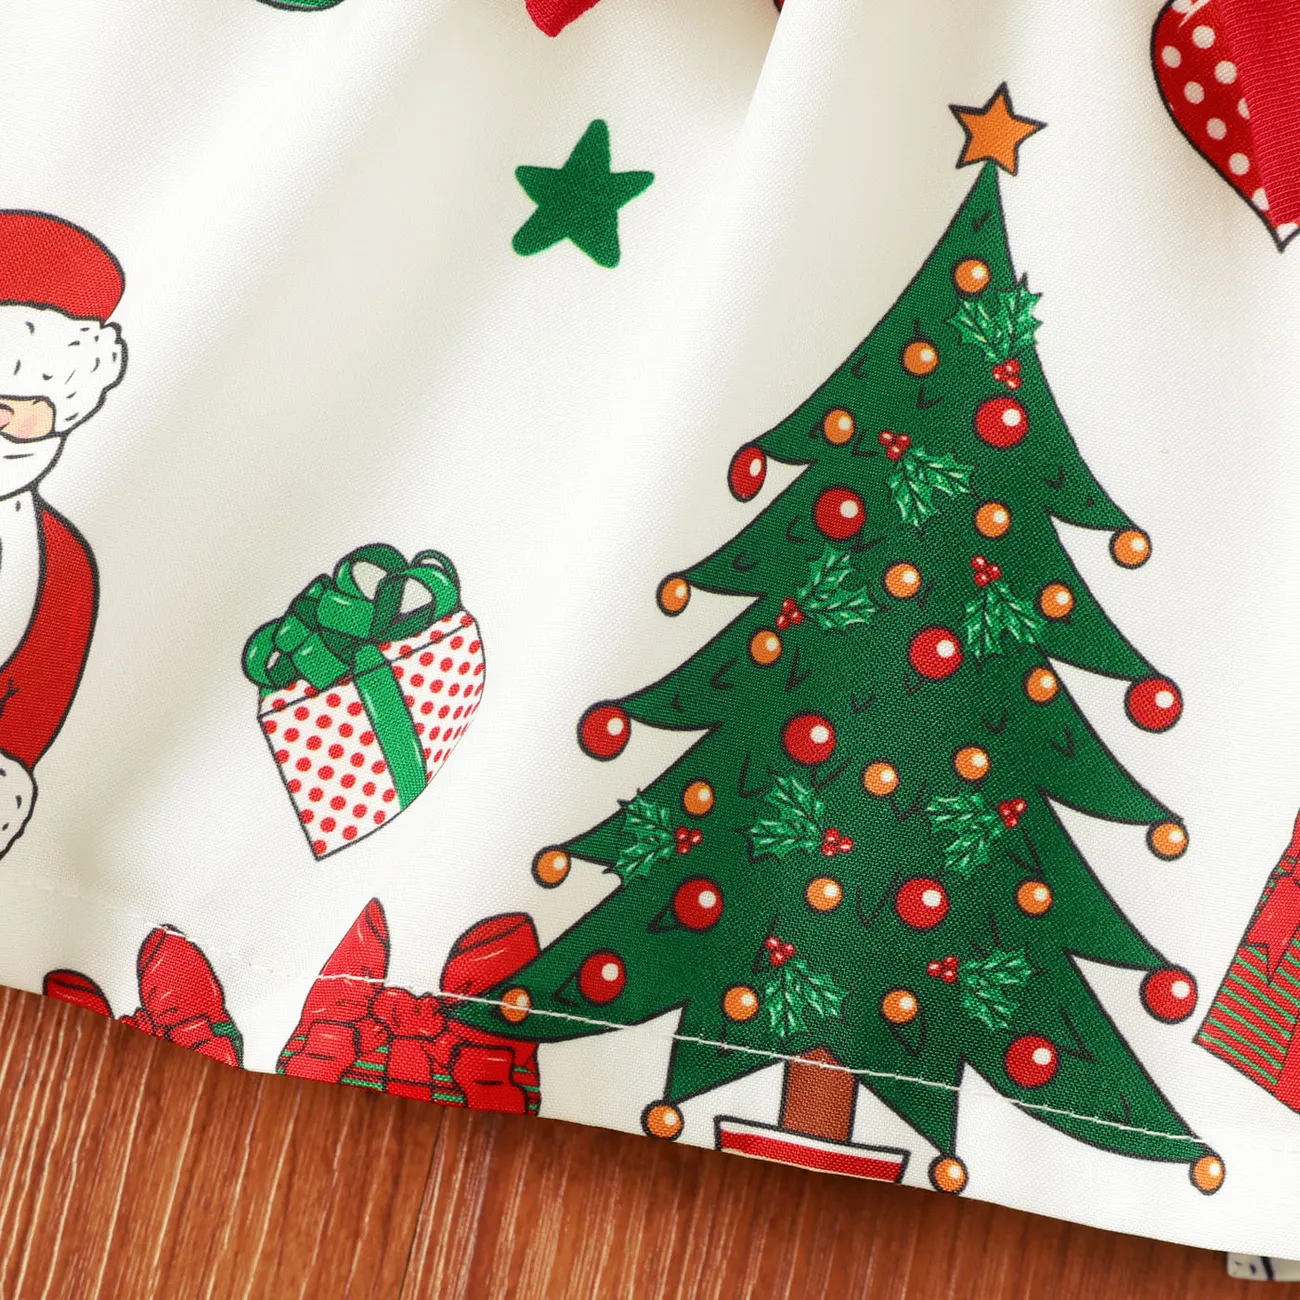 聖誕節 嬰兒 布料拼接 甜美 長袖 連衣裙 大红 big image 1